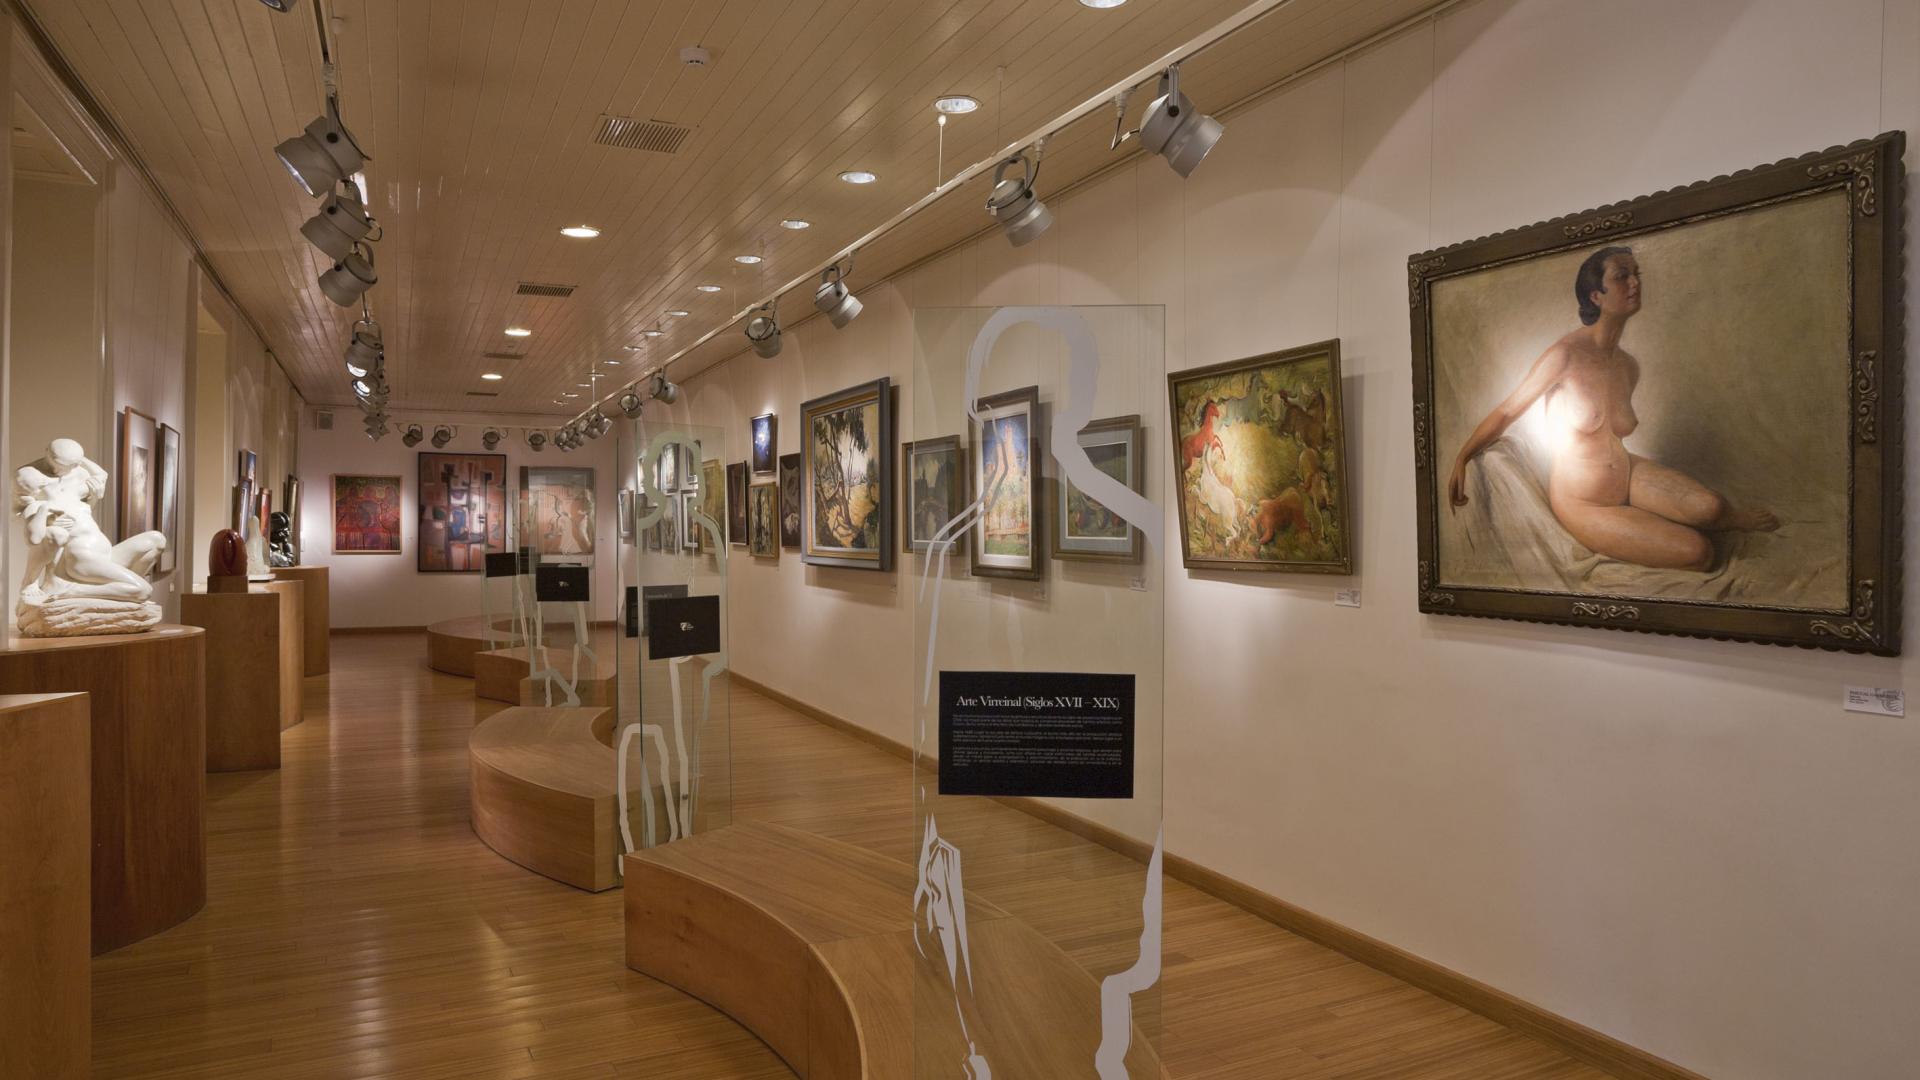 Vista del interior del Museo de Arte y Artesanía de Linares.